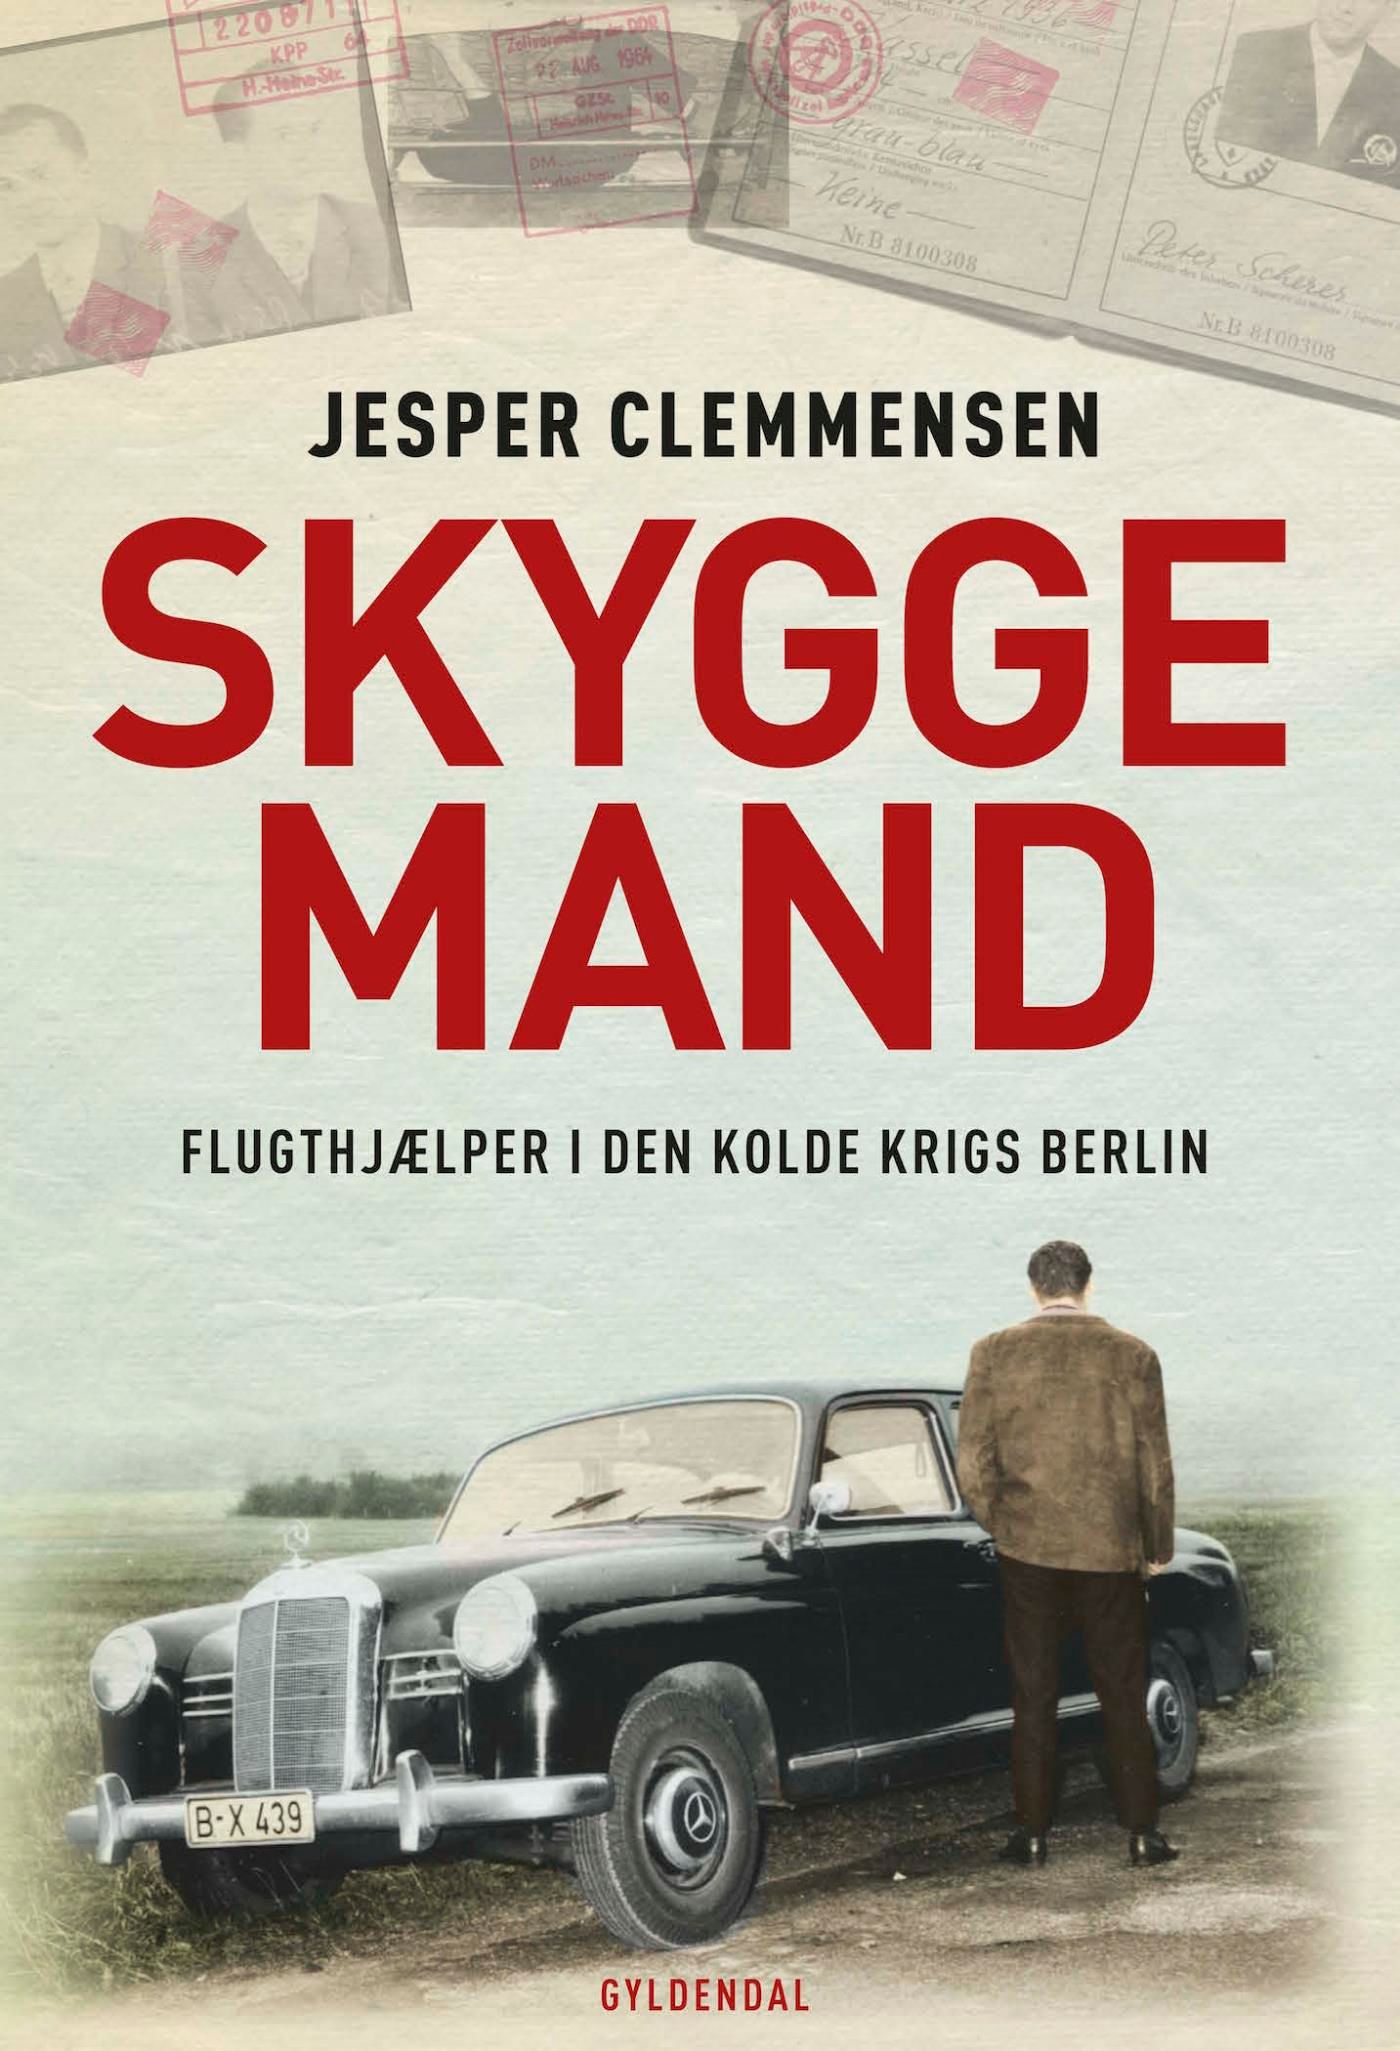 Skyggemand, eBook by Jesper Clemmensen